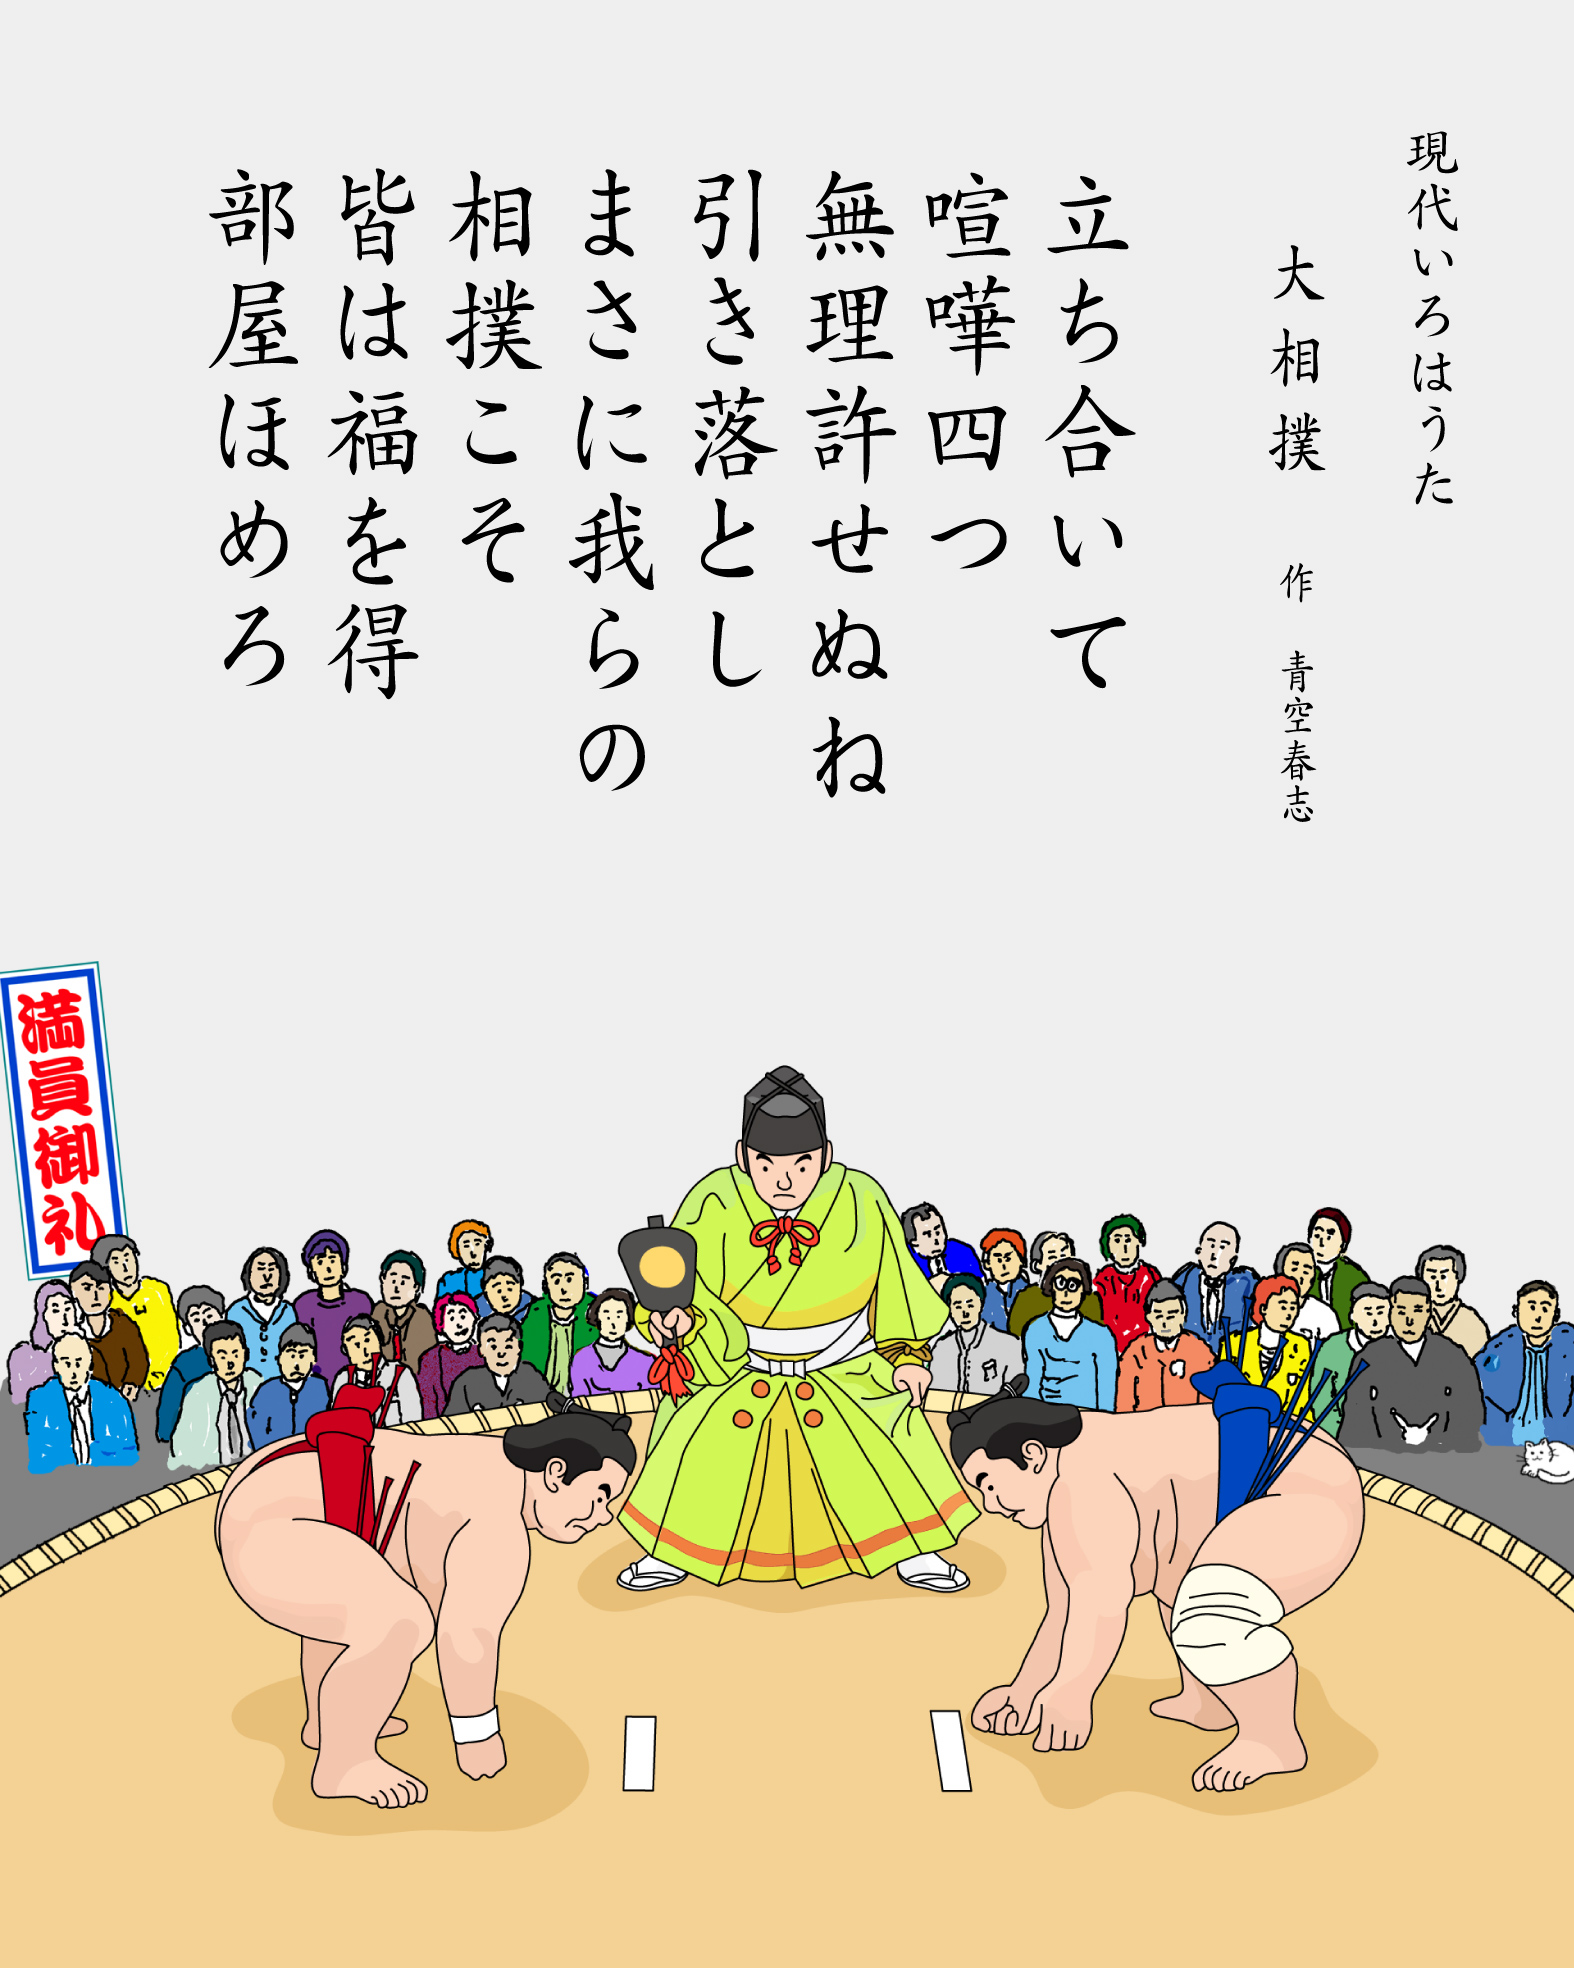 パングラム　現代いろはうた　現代いろは歌　大相撲　Japanese Pangrams